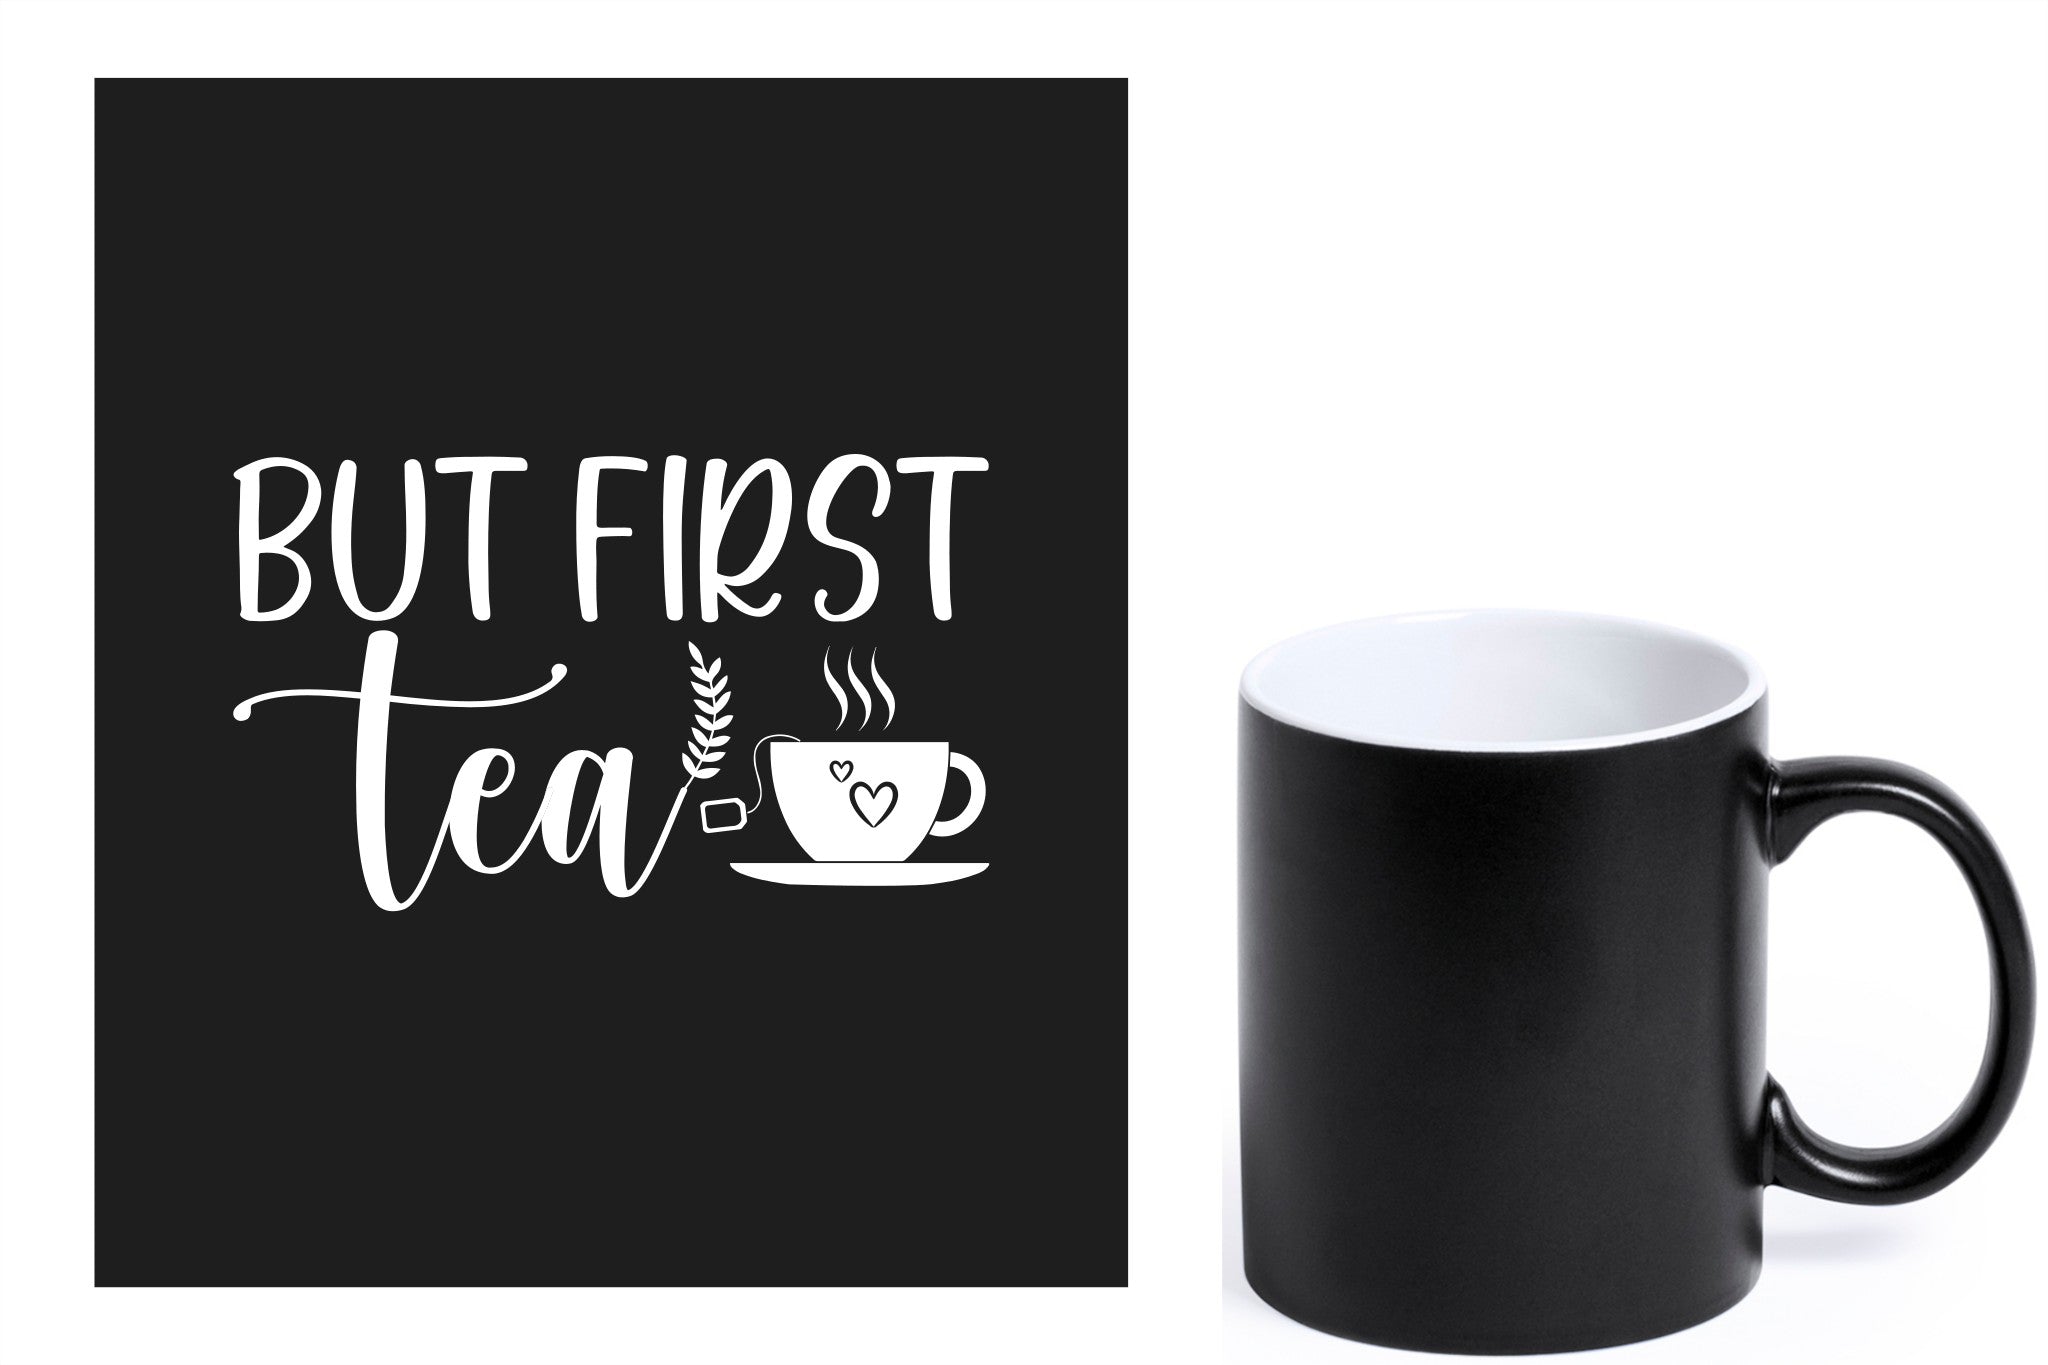 zwarte keramische mok met witte gravure  'But first tea'.